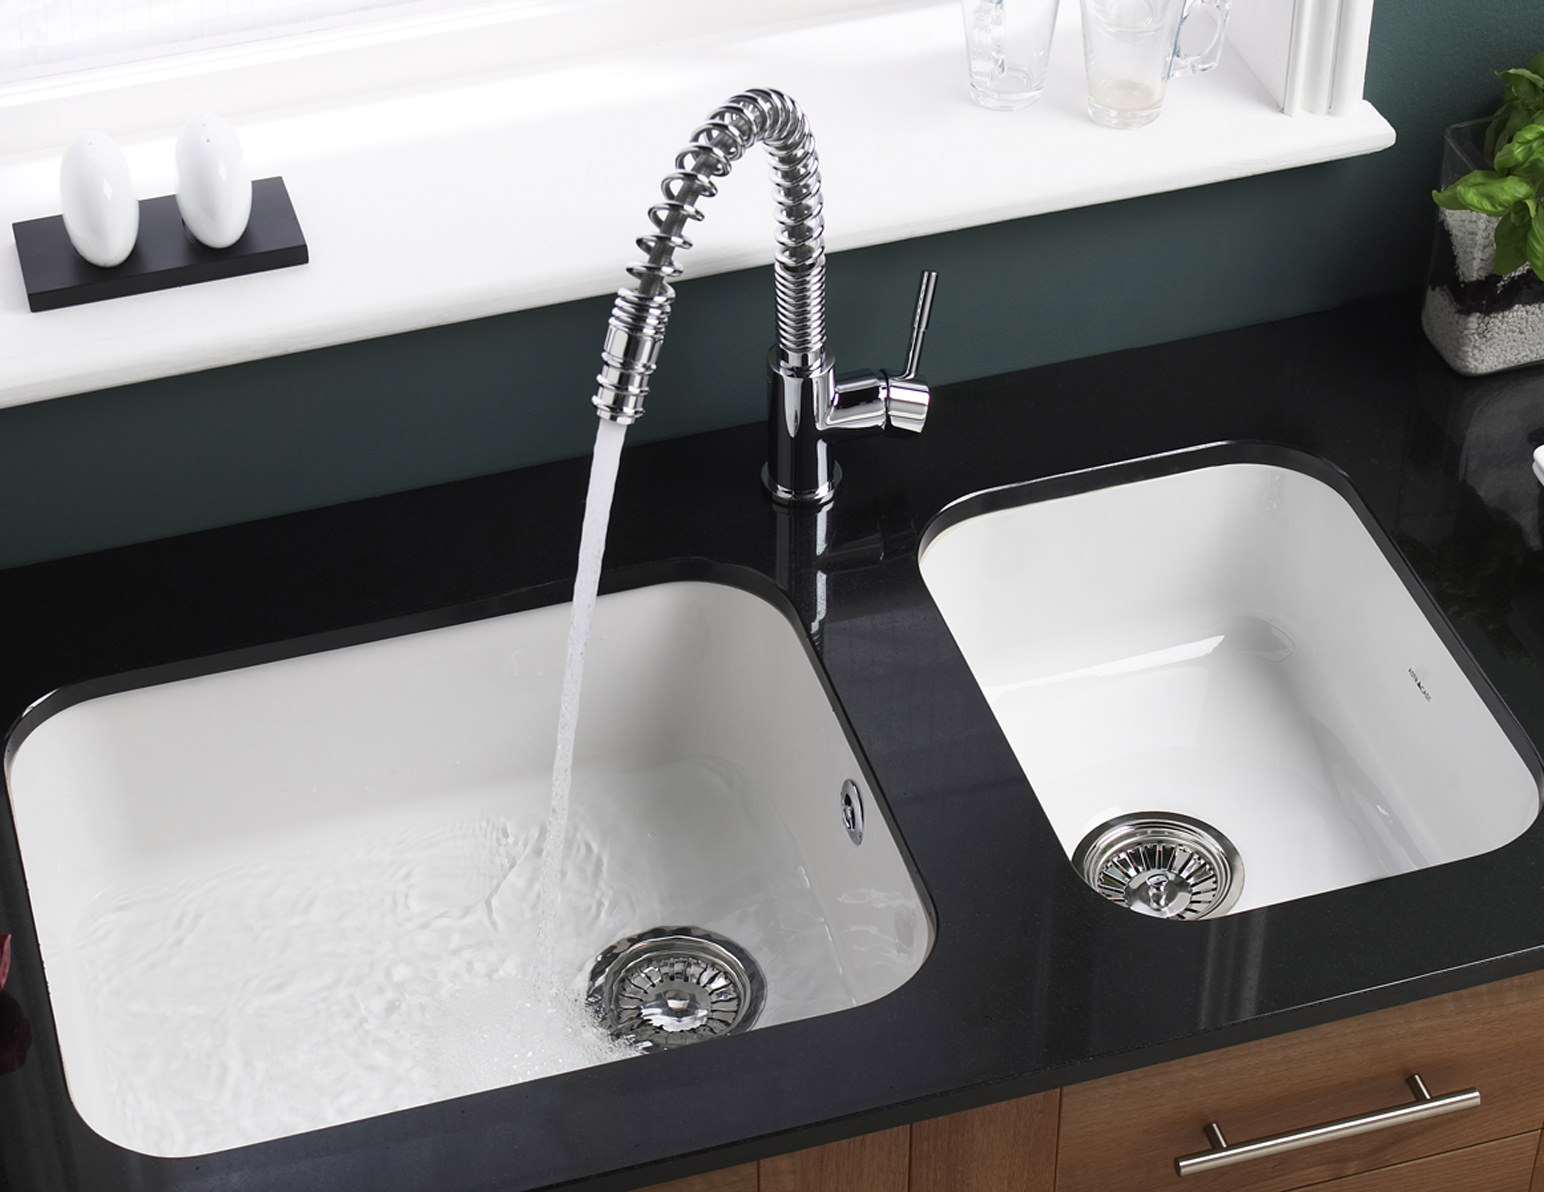 white ceramic undermount kitchen sink